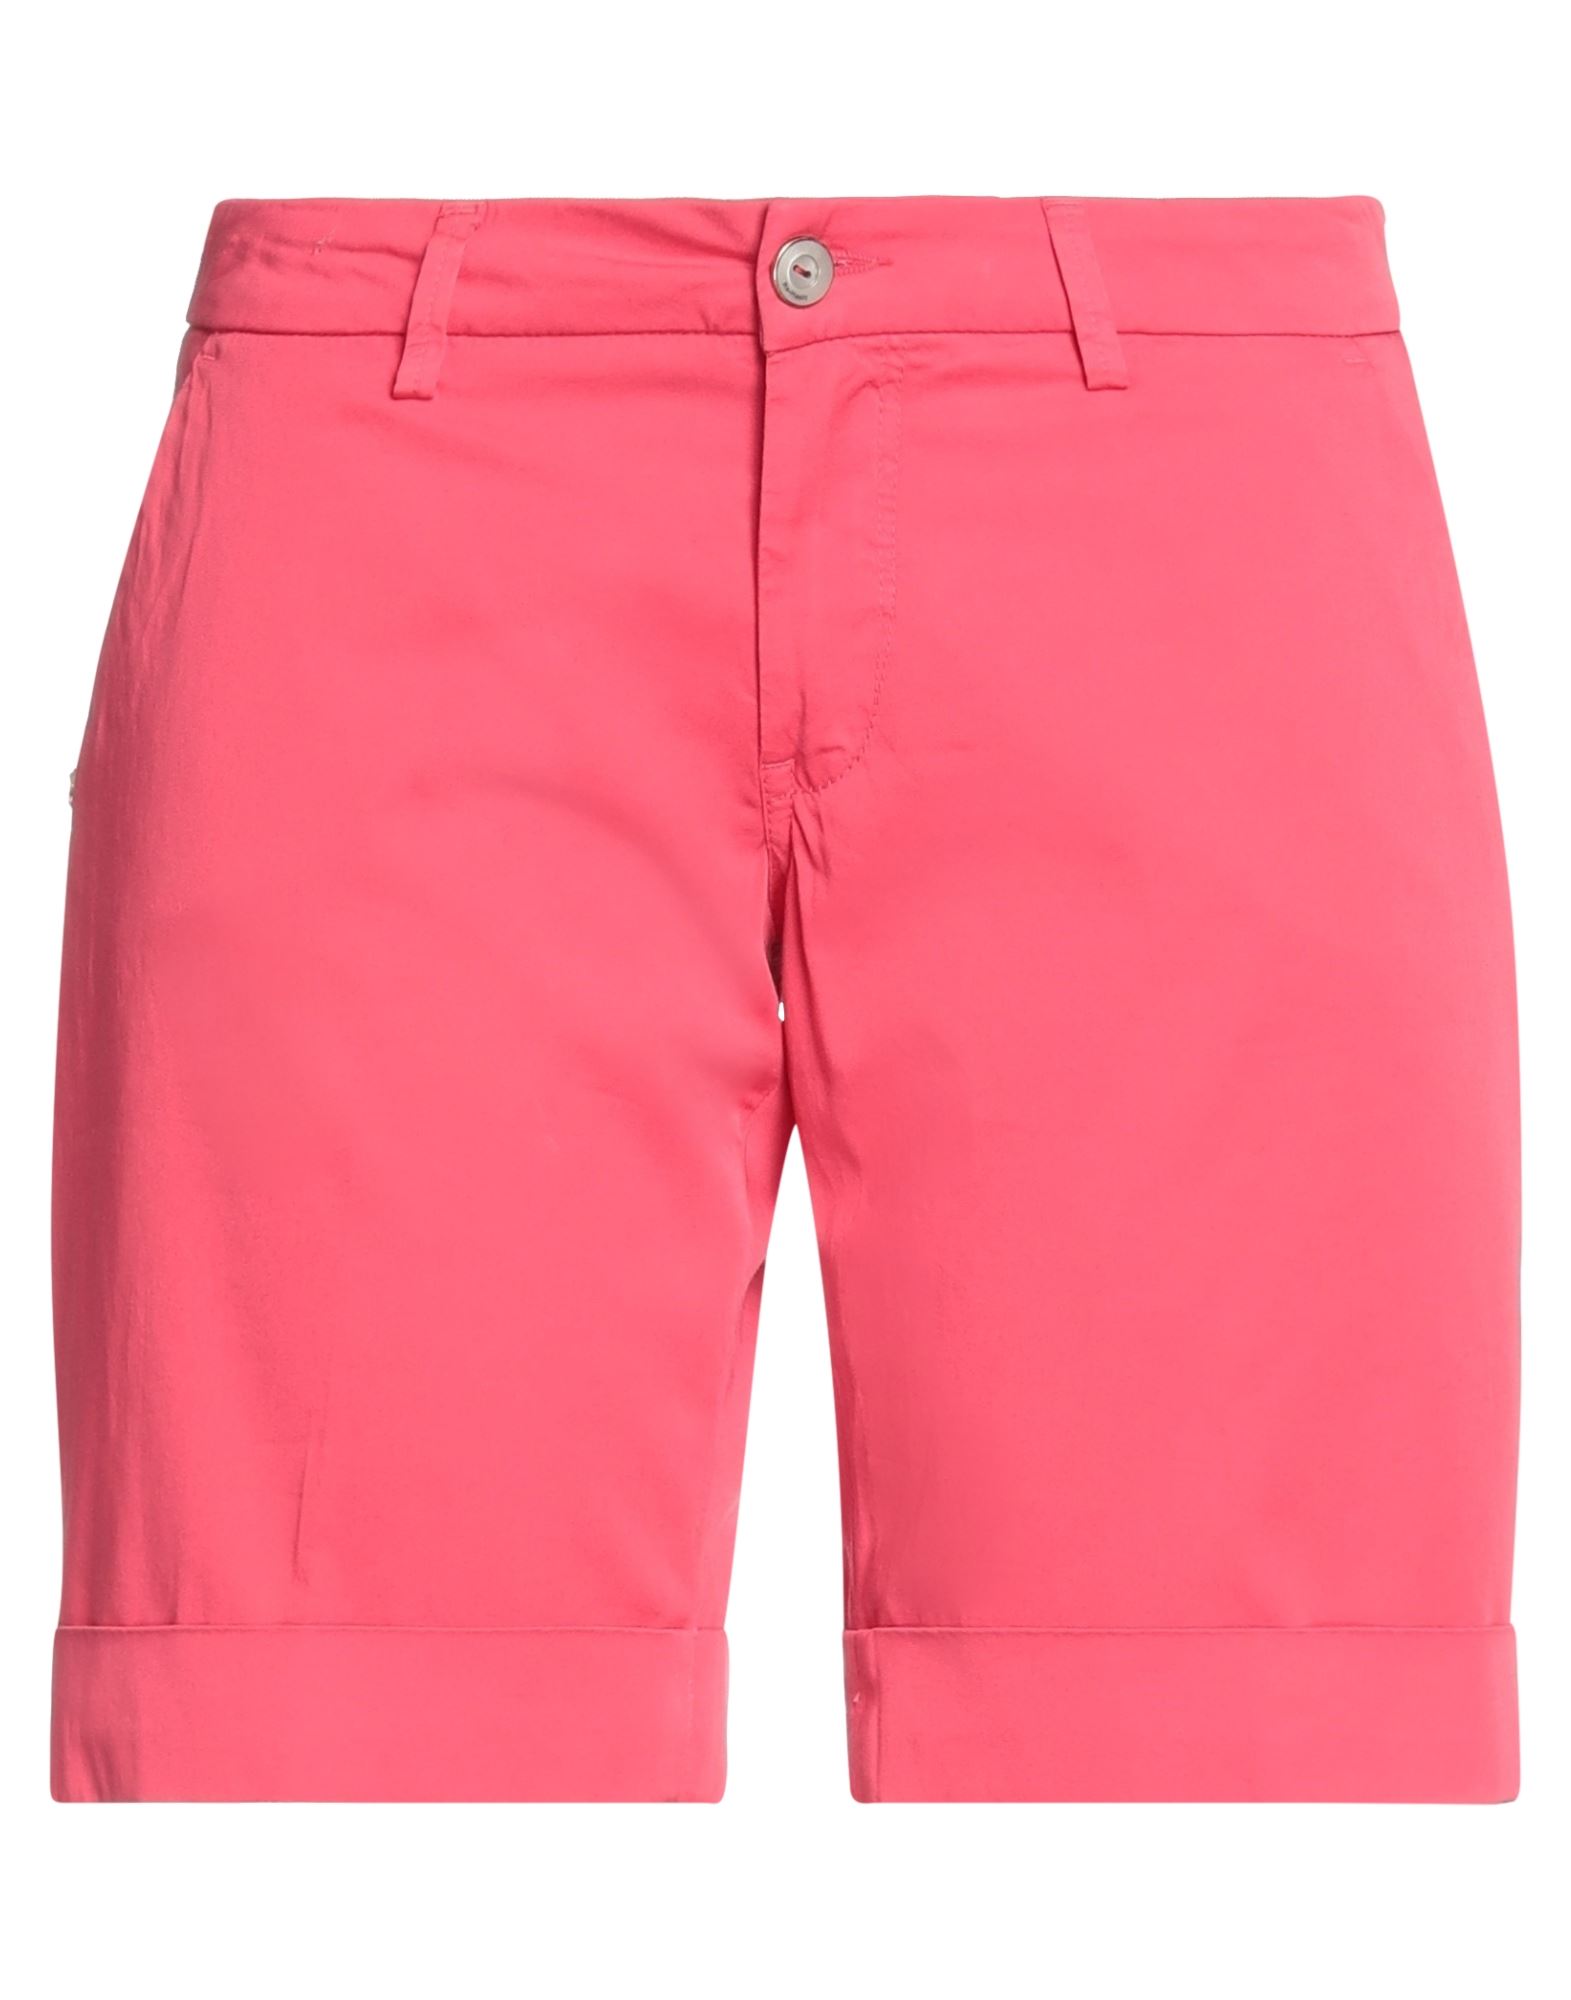 Re-hash Re_hash Woman Shorts & Bermuda Shorts Fuchsia Size 26 Cotton, Elastane In Pink